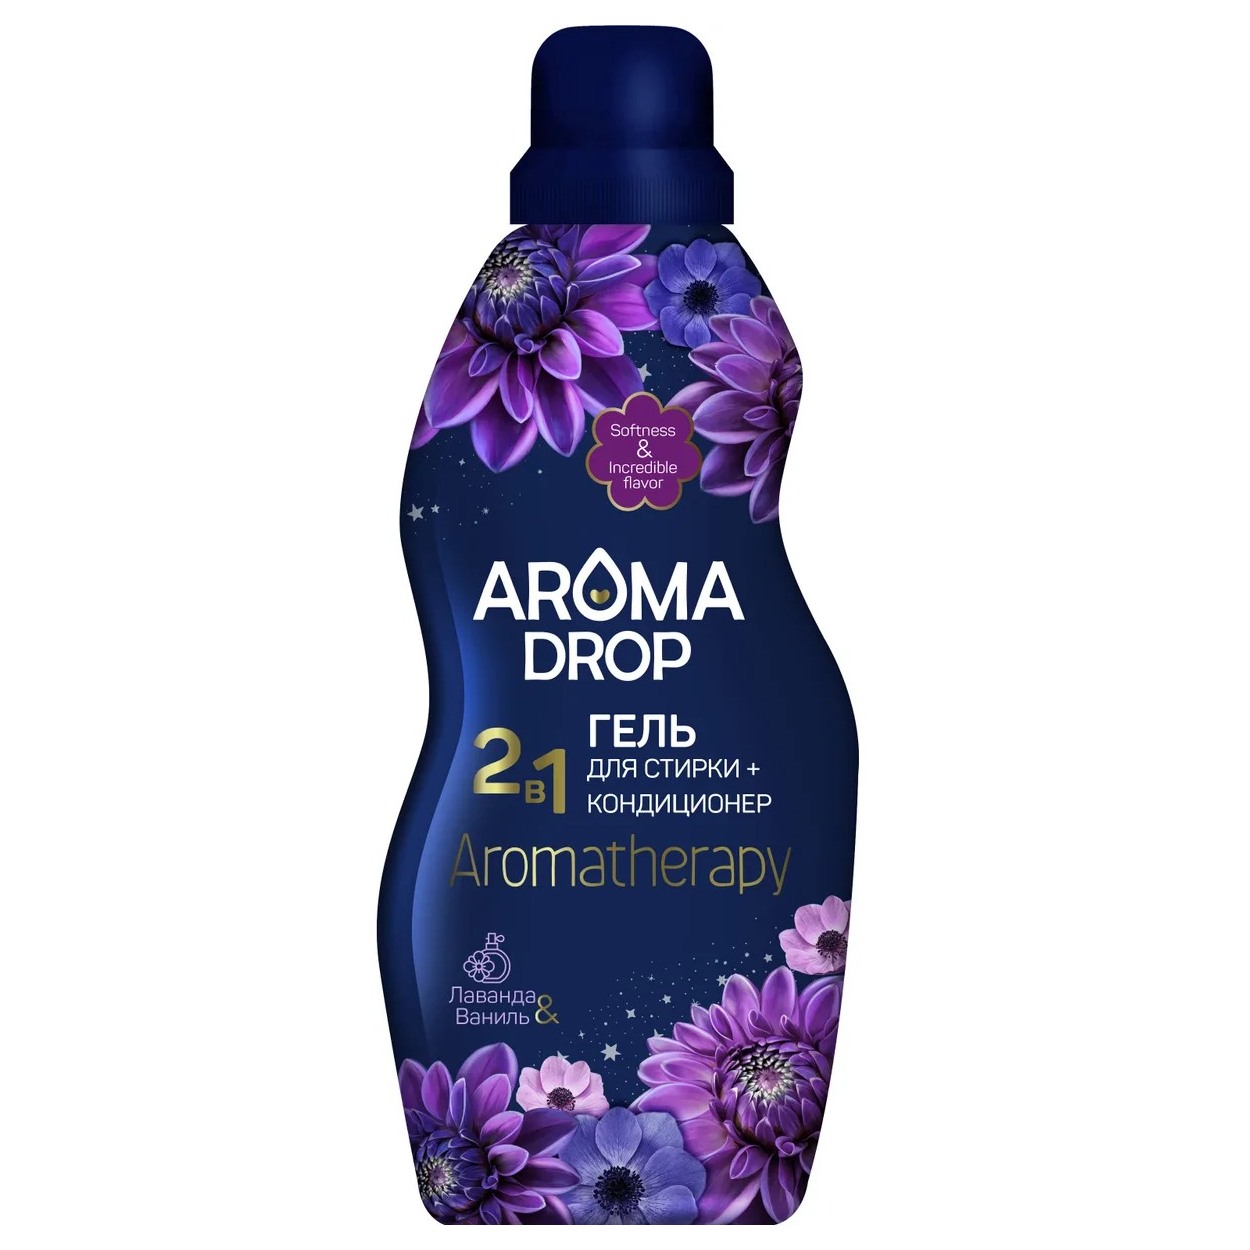 гель для стирки aroma drop aromatherapy 2 в 1 с кондиционером очный микс 5 л Гель для стирки Aroma Drop 2 в 1 лаванда/ваниль 1 л